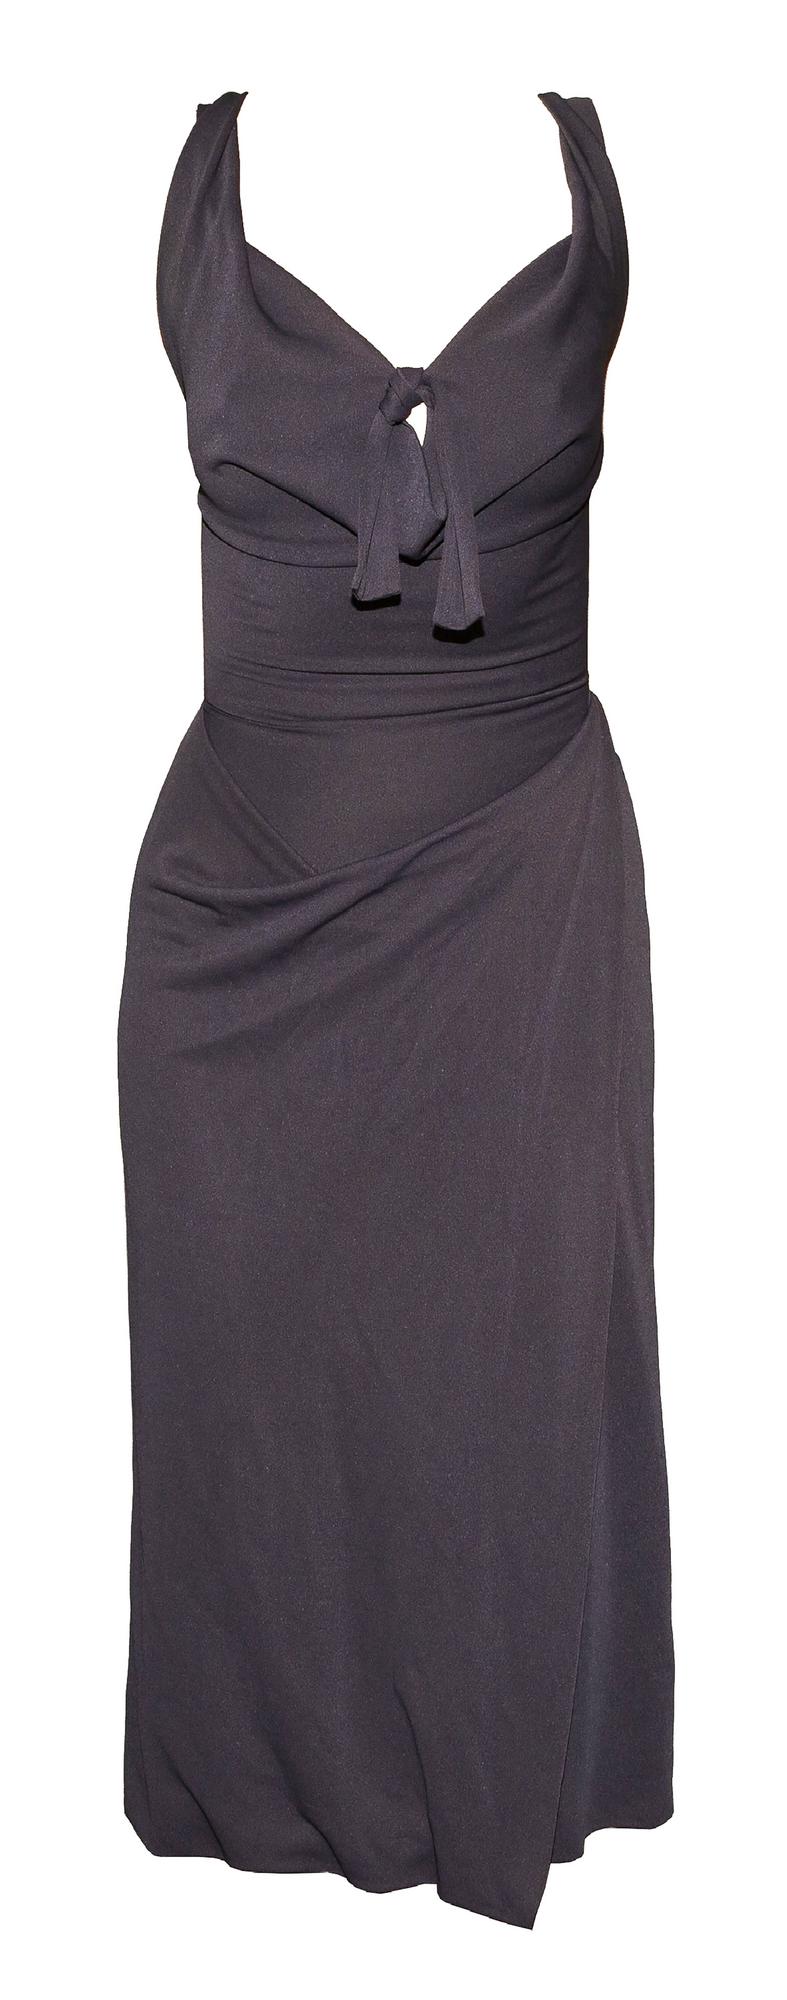 Vivienne Westwood BODY DRESS Description: Low-cut dress in gray crepe jersey....